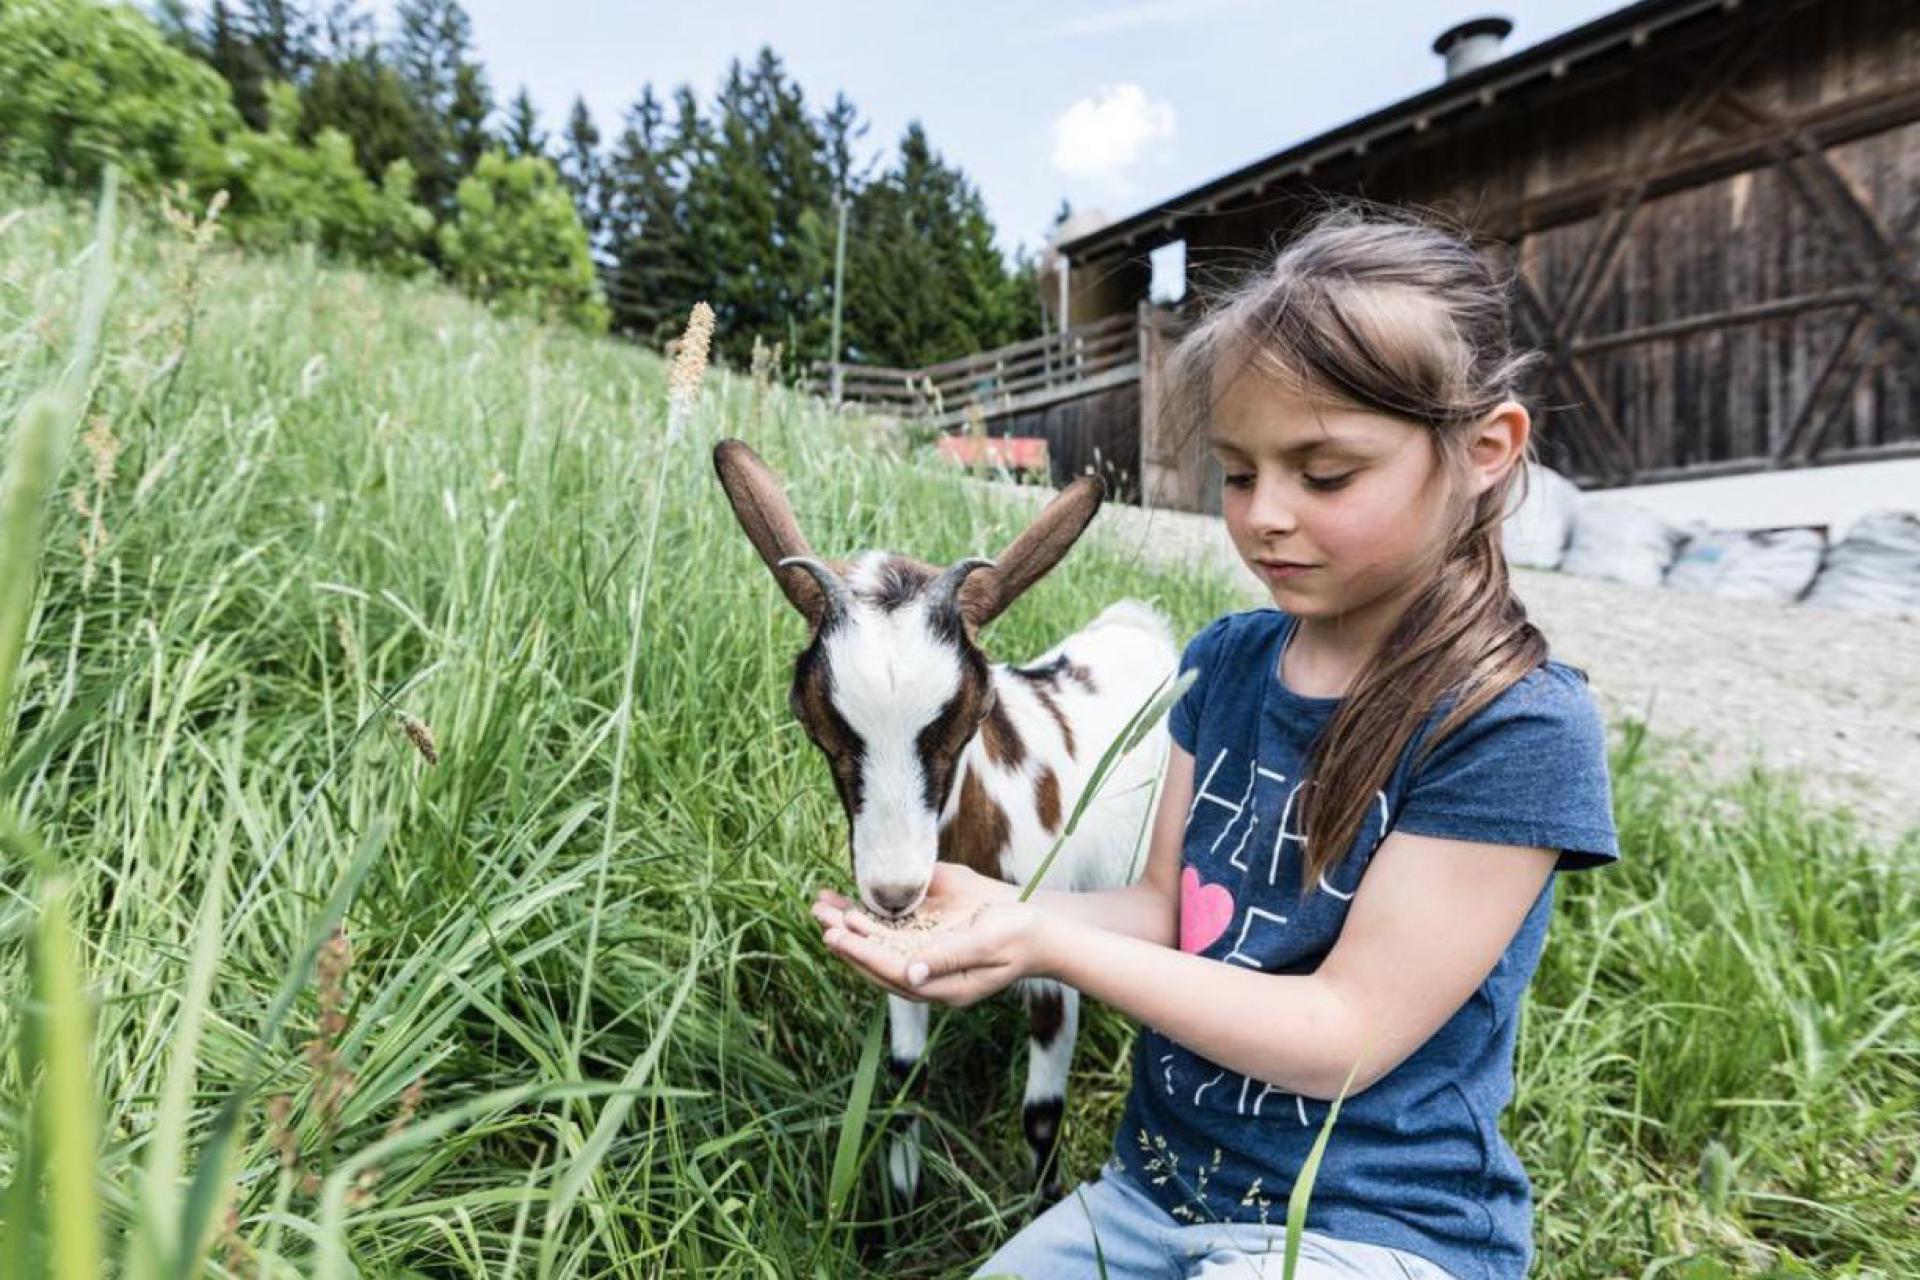 Actieve agriturismo met boerderijdieren in Trentino